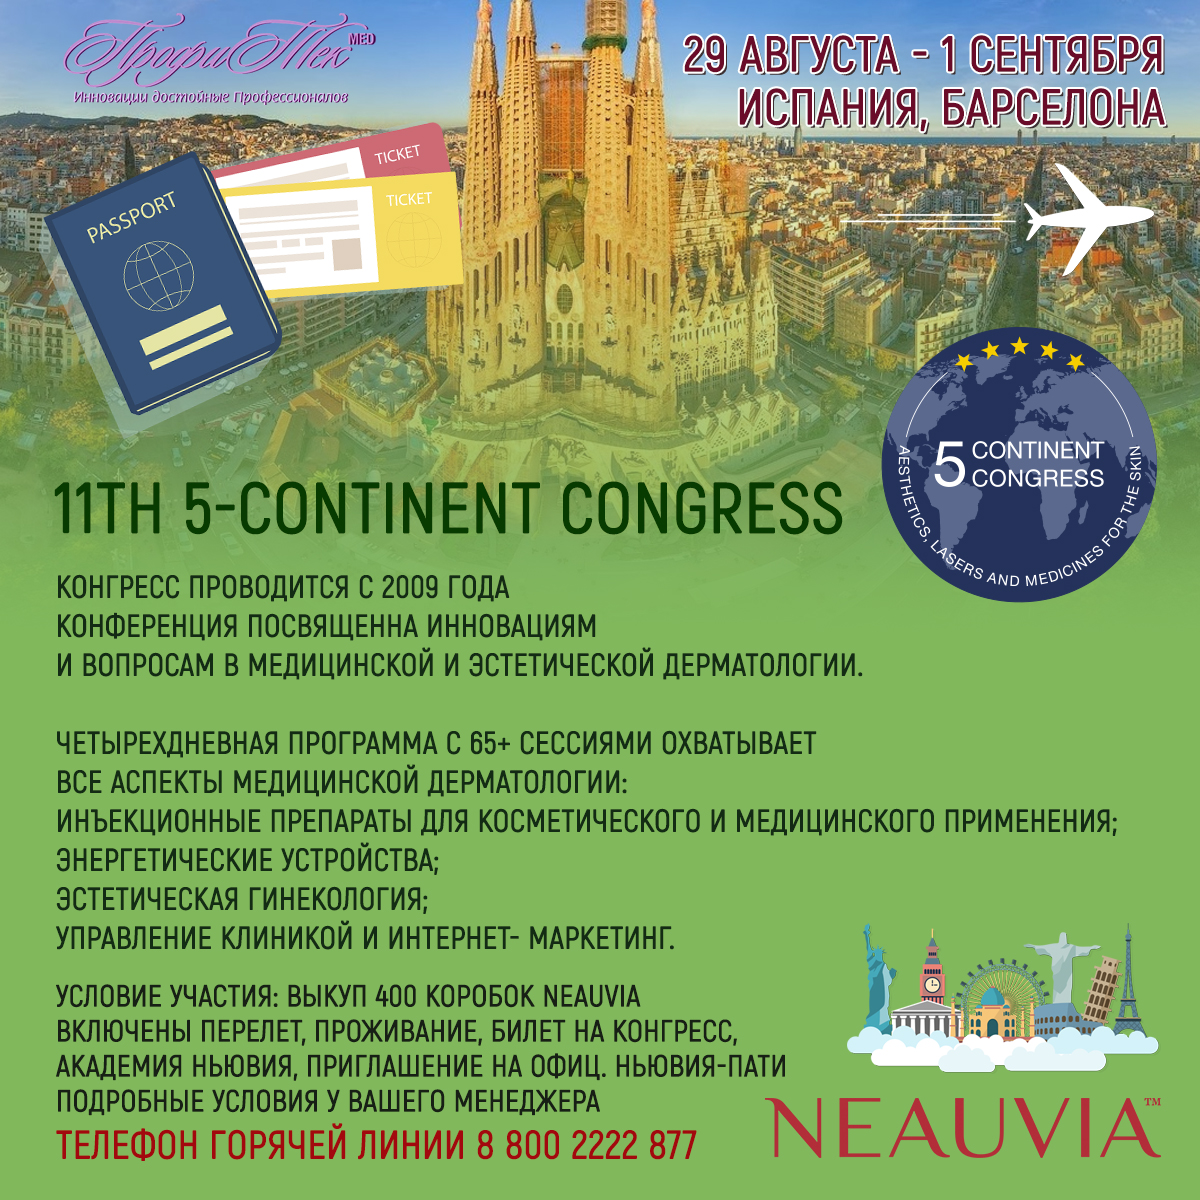 29 августа - 1 сентября, Испания, Барселона, 11th 5-Continent Congress